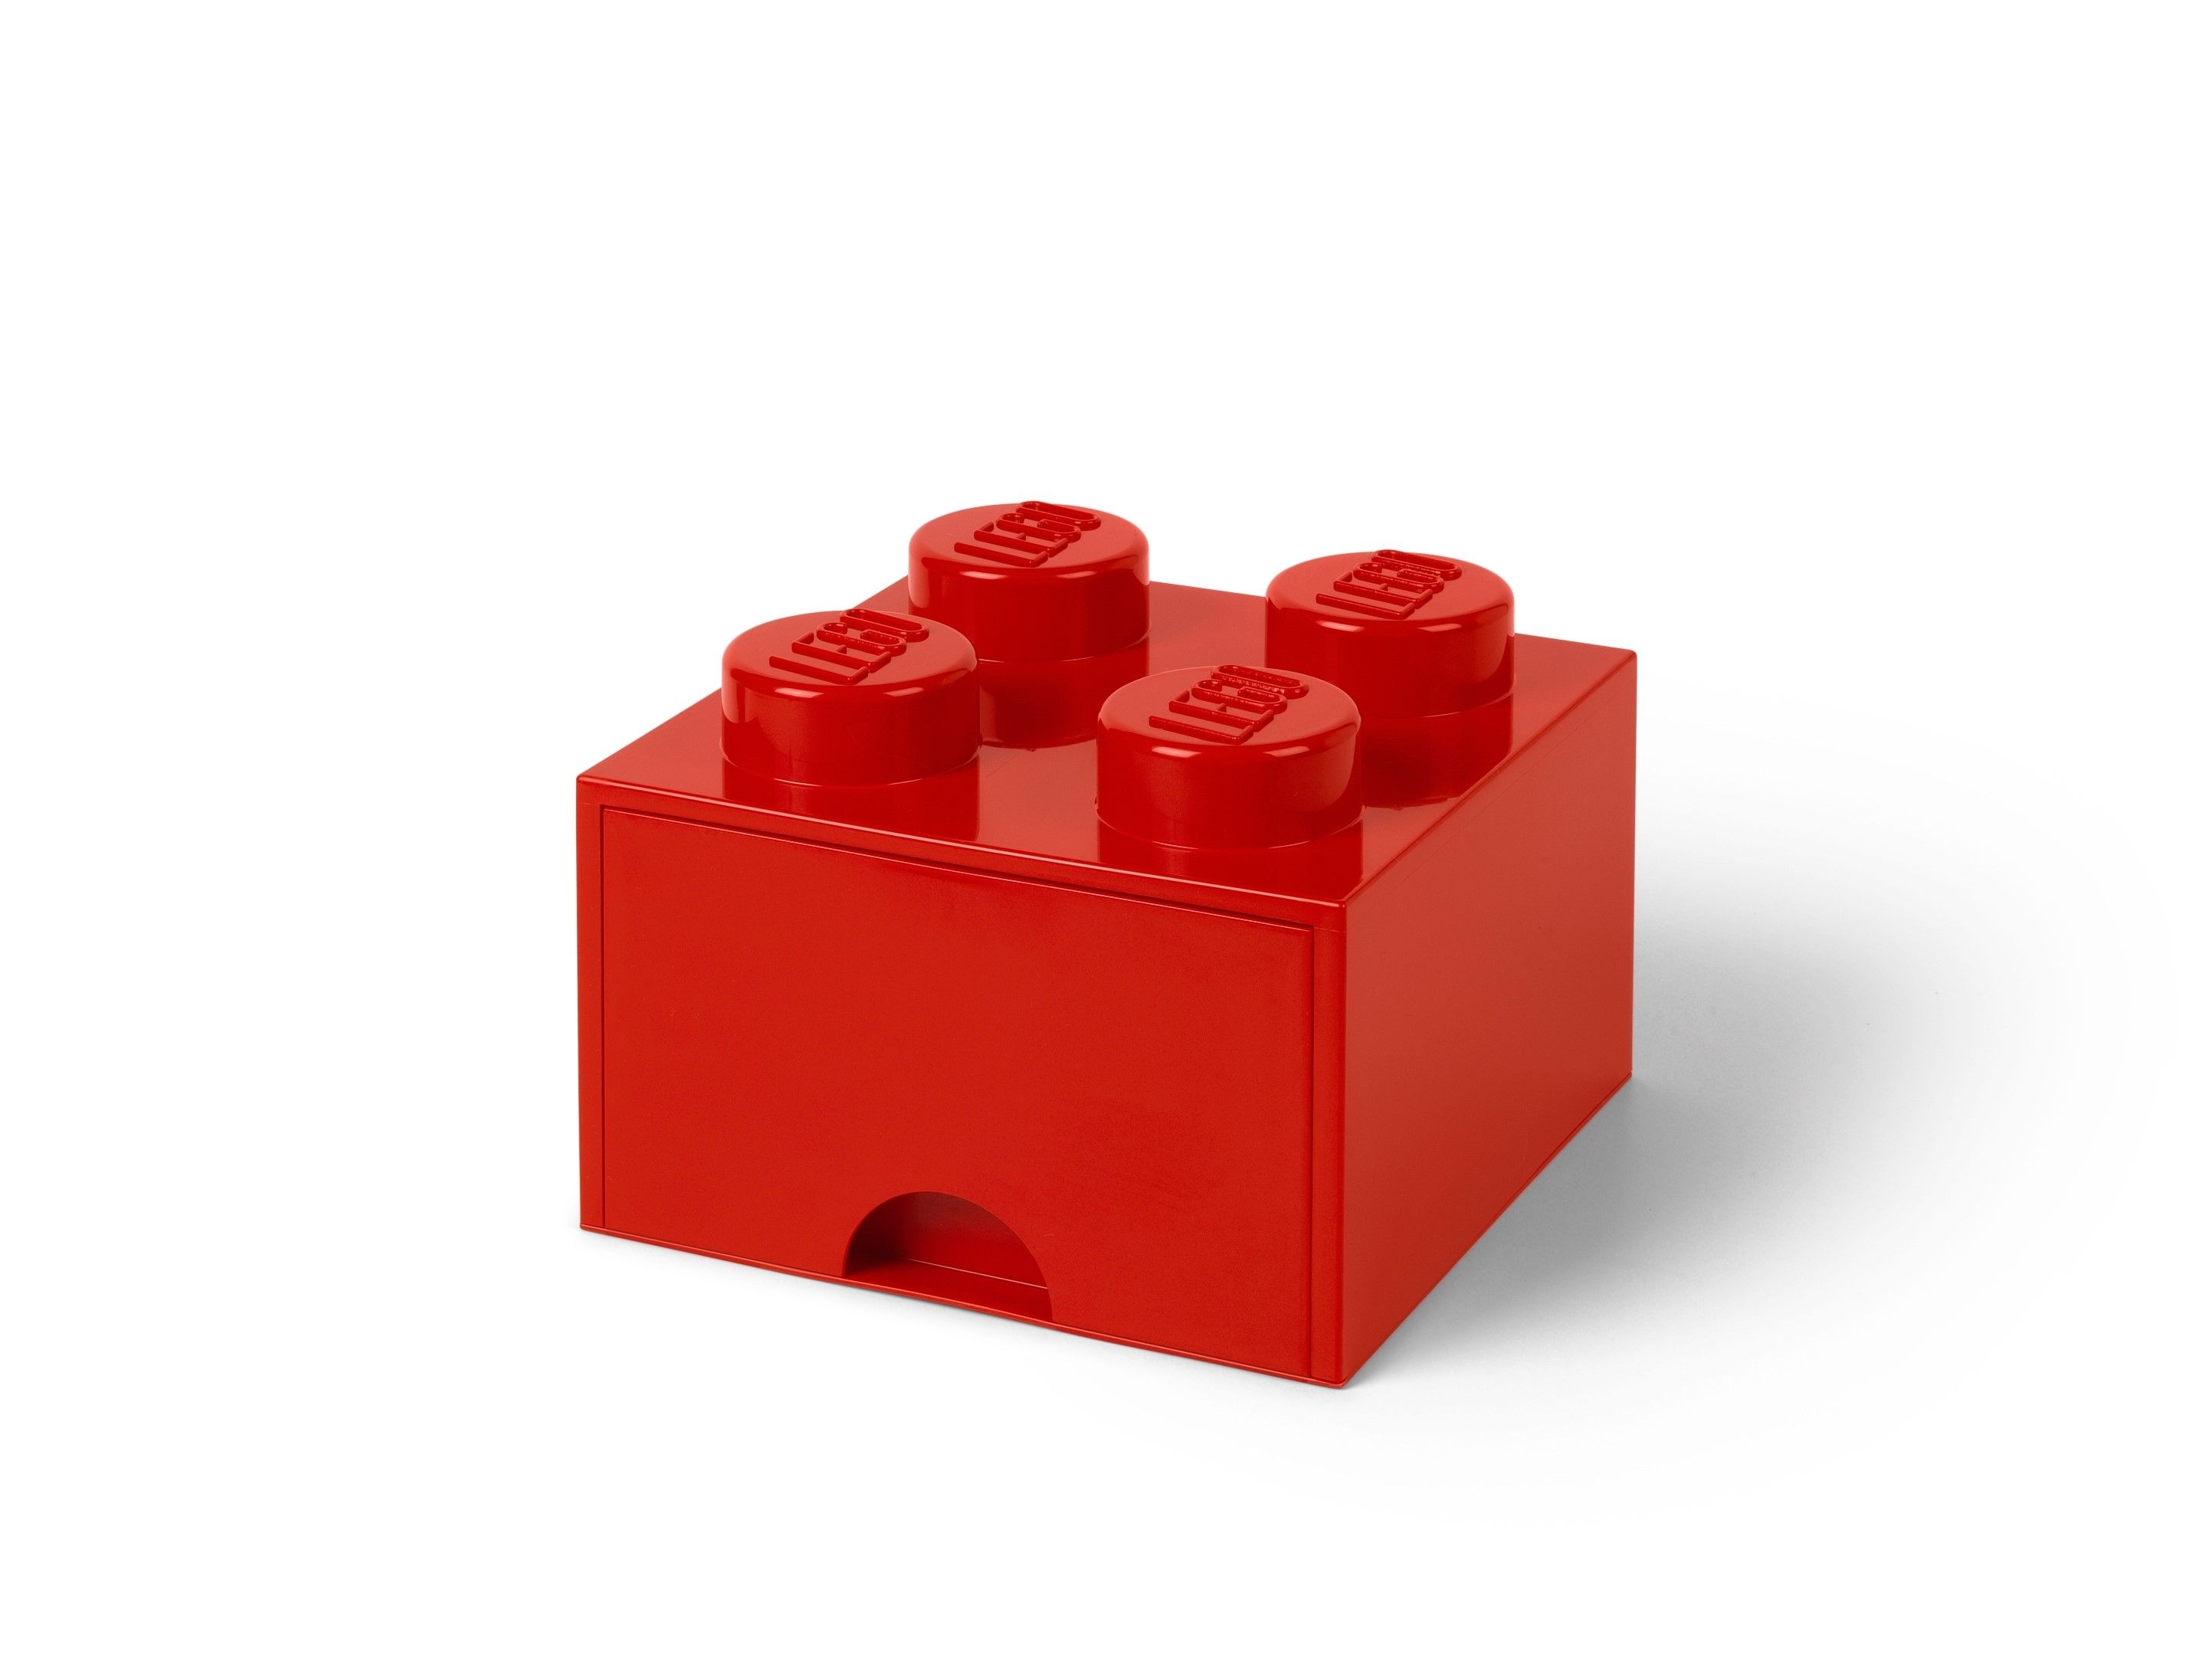 LEGO Gear 5006140 AUFBEWAHRUNGSSTEIN MIT SCHUBFACH UND 4 NOPPEN IN ROT